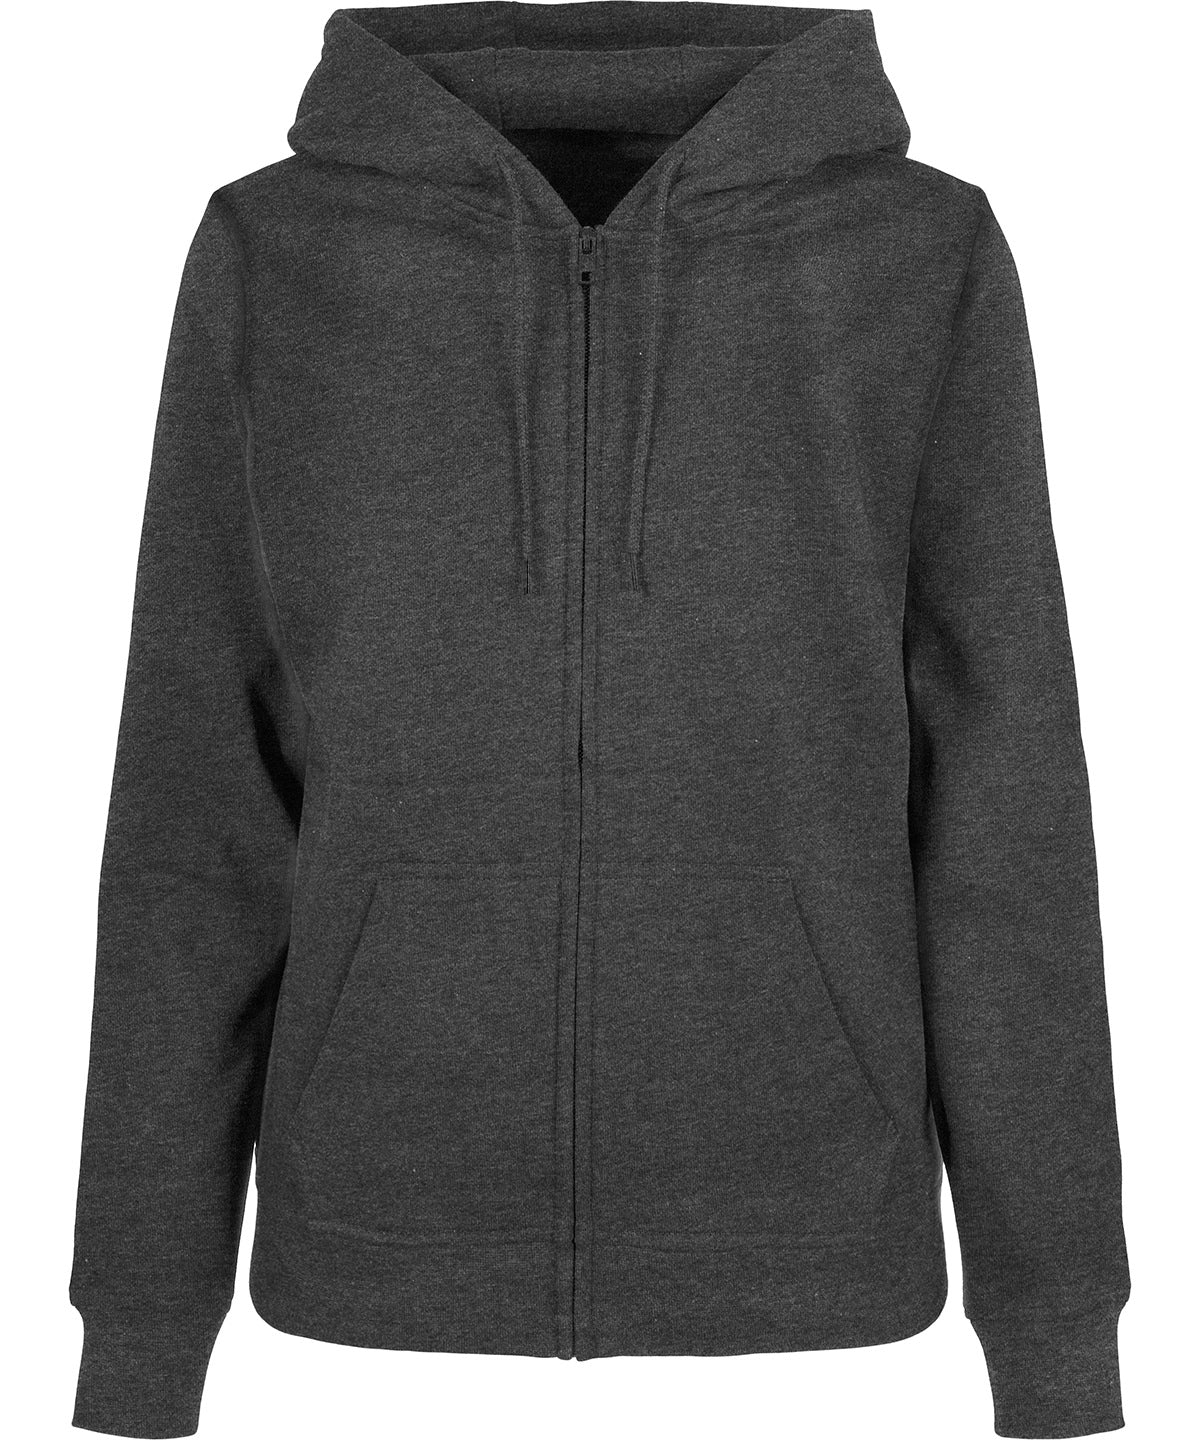 Personalised Hoodies - Black Build Your Brand Basic Women’s basic zip hoodie